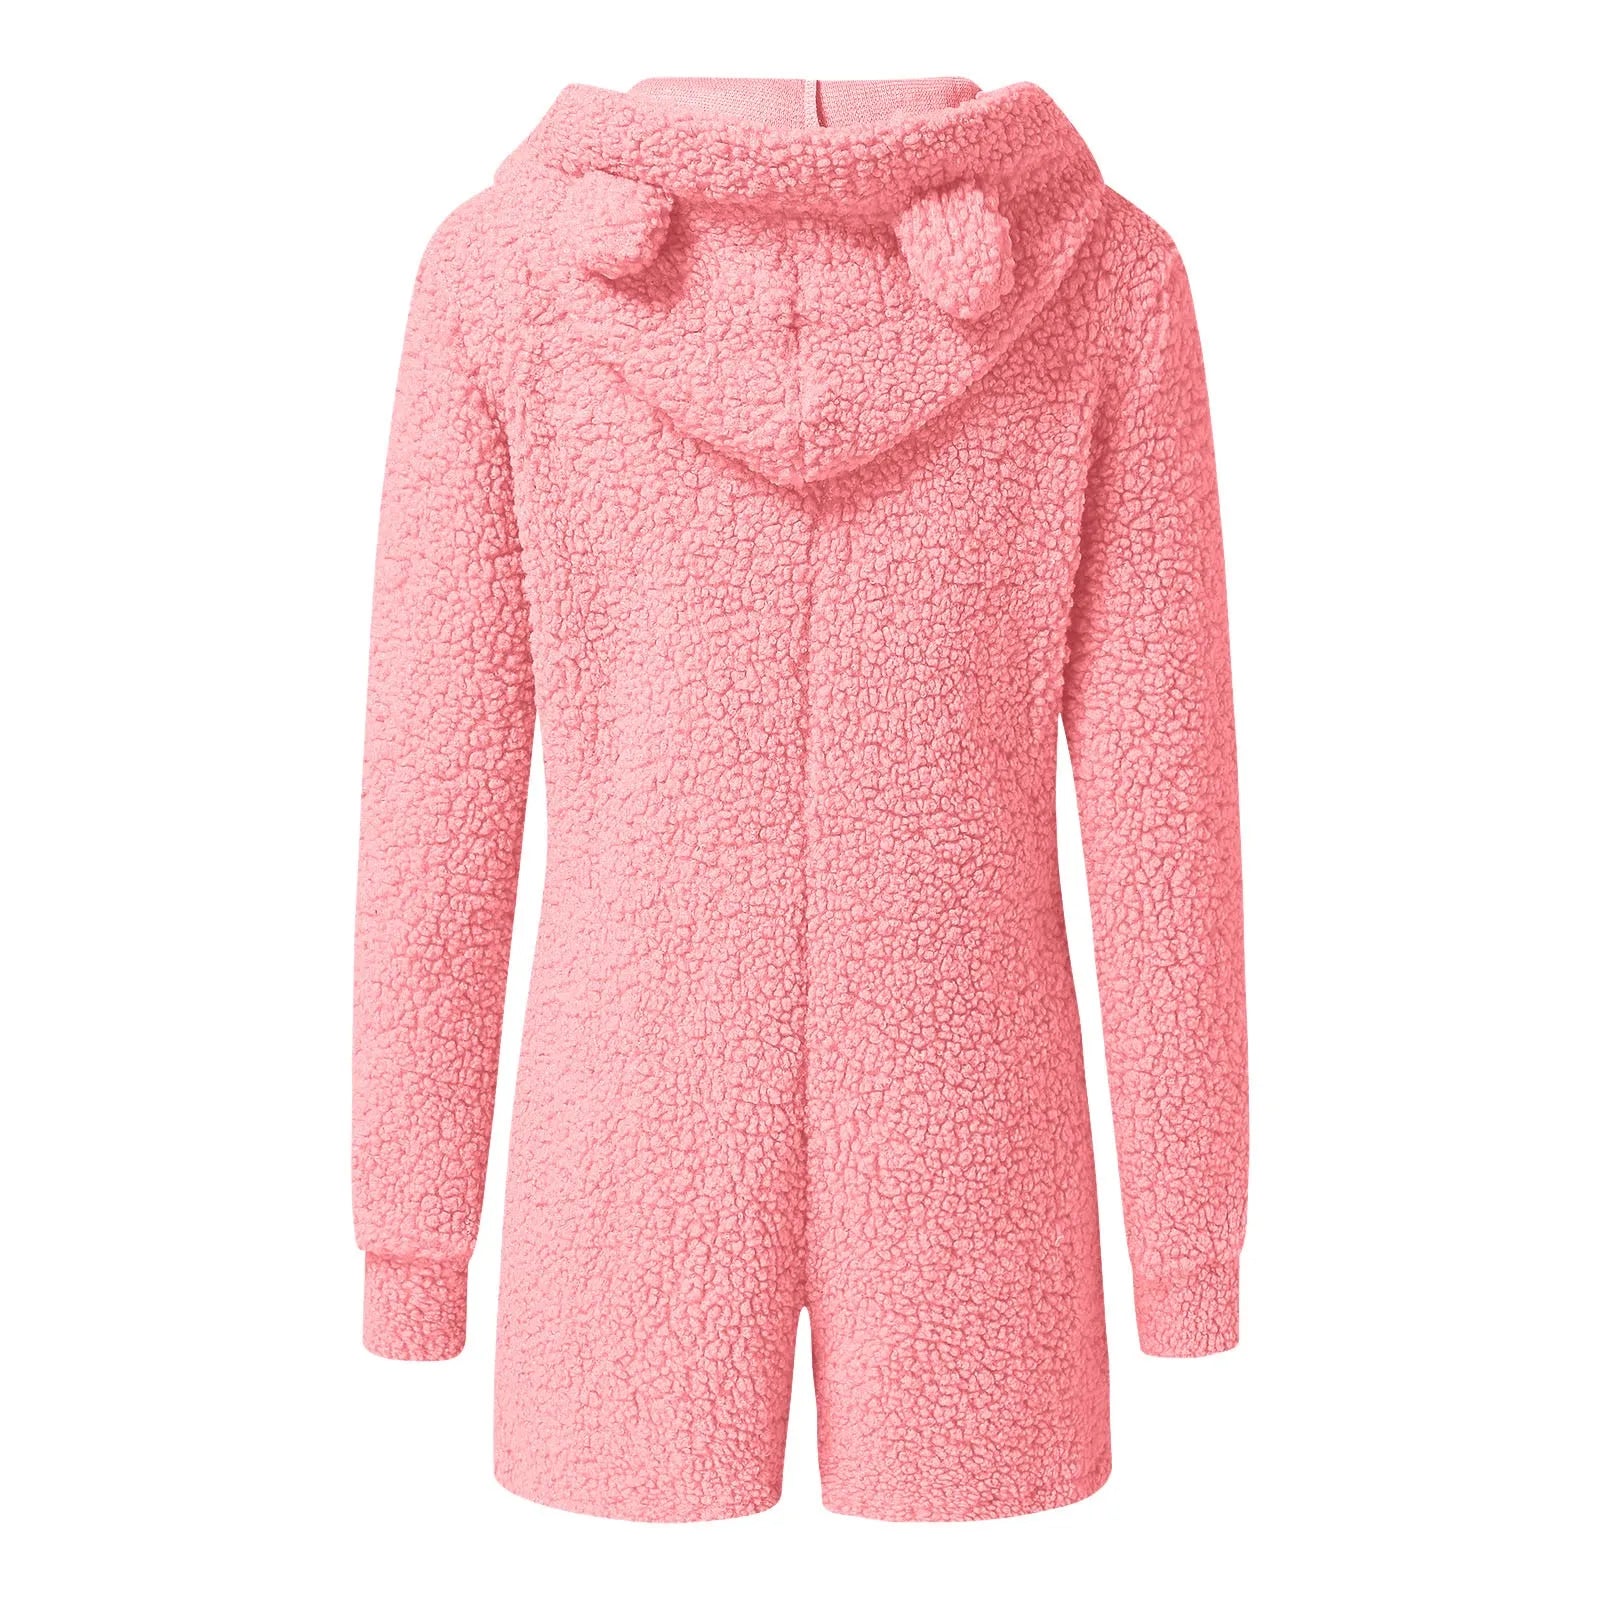 Winter Warmth: Women's Fleece Bear Ear Hooded Jumpsuit Shorts - Cozy Streetwear Sleepwear in Plus Size